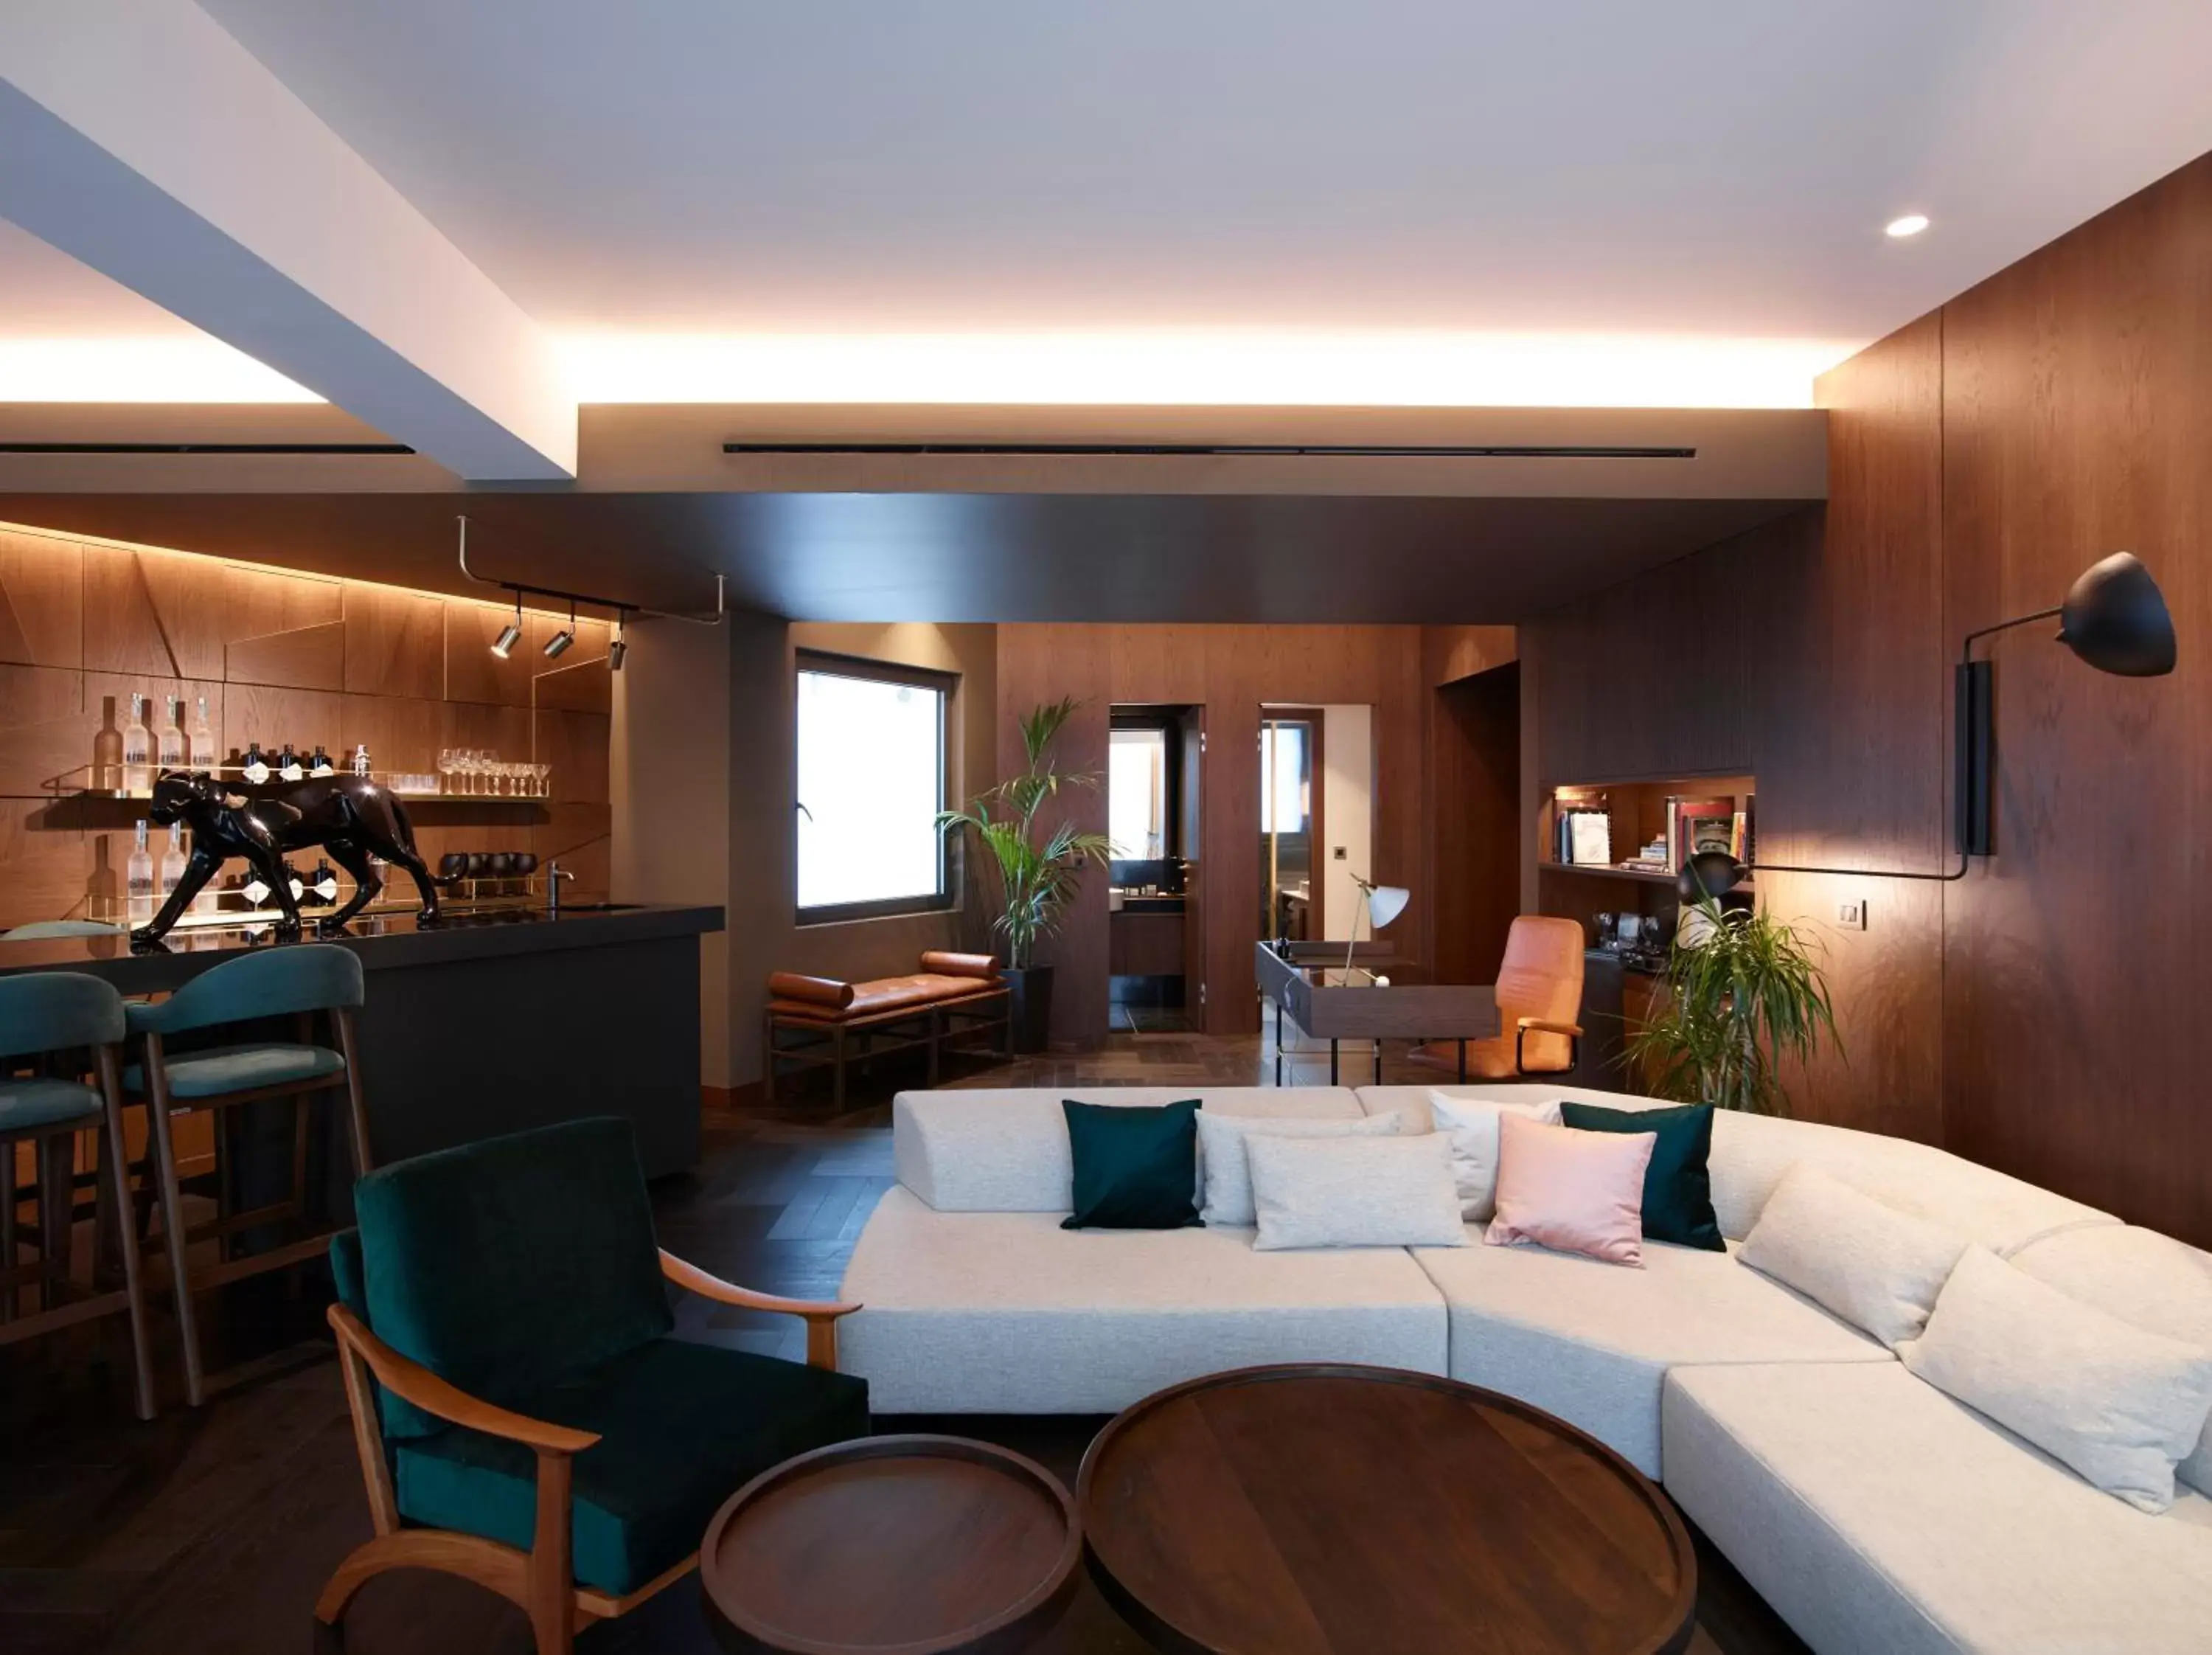 Living room in Brown Acropol, a member of Brown Hotels